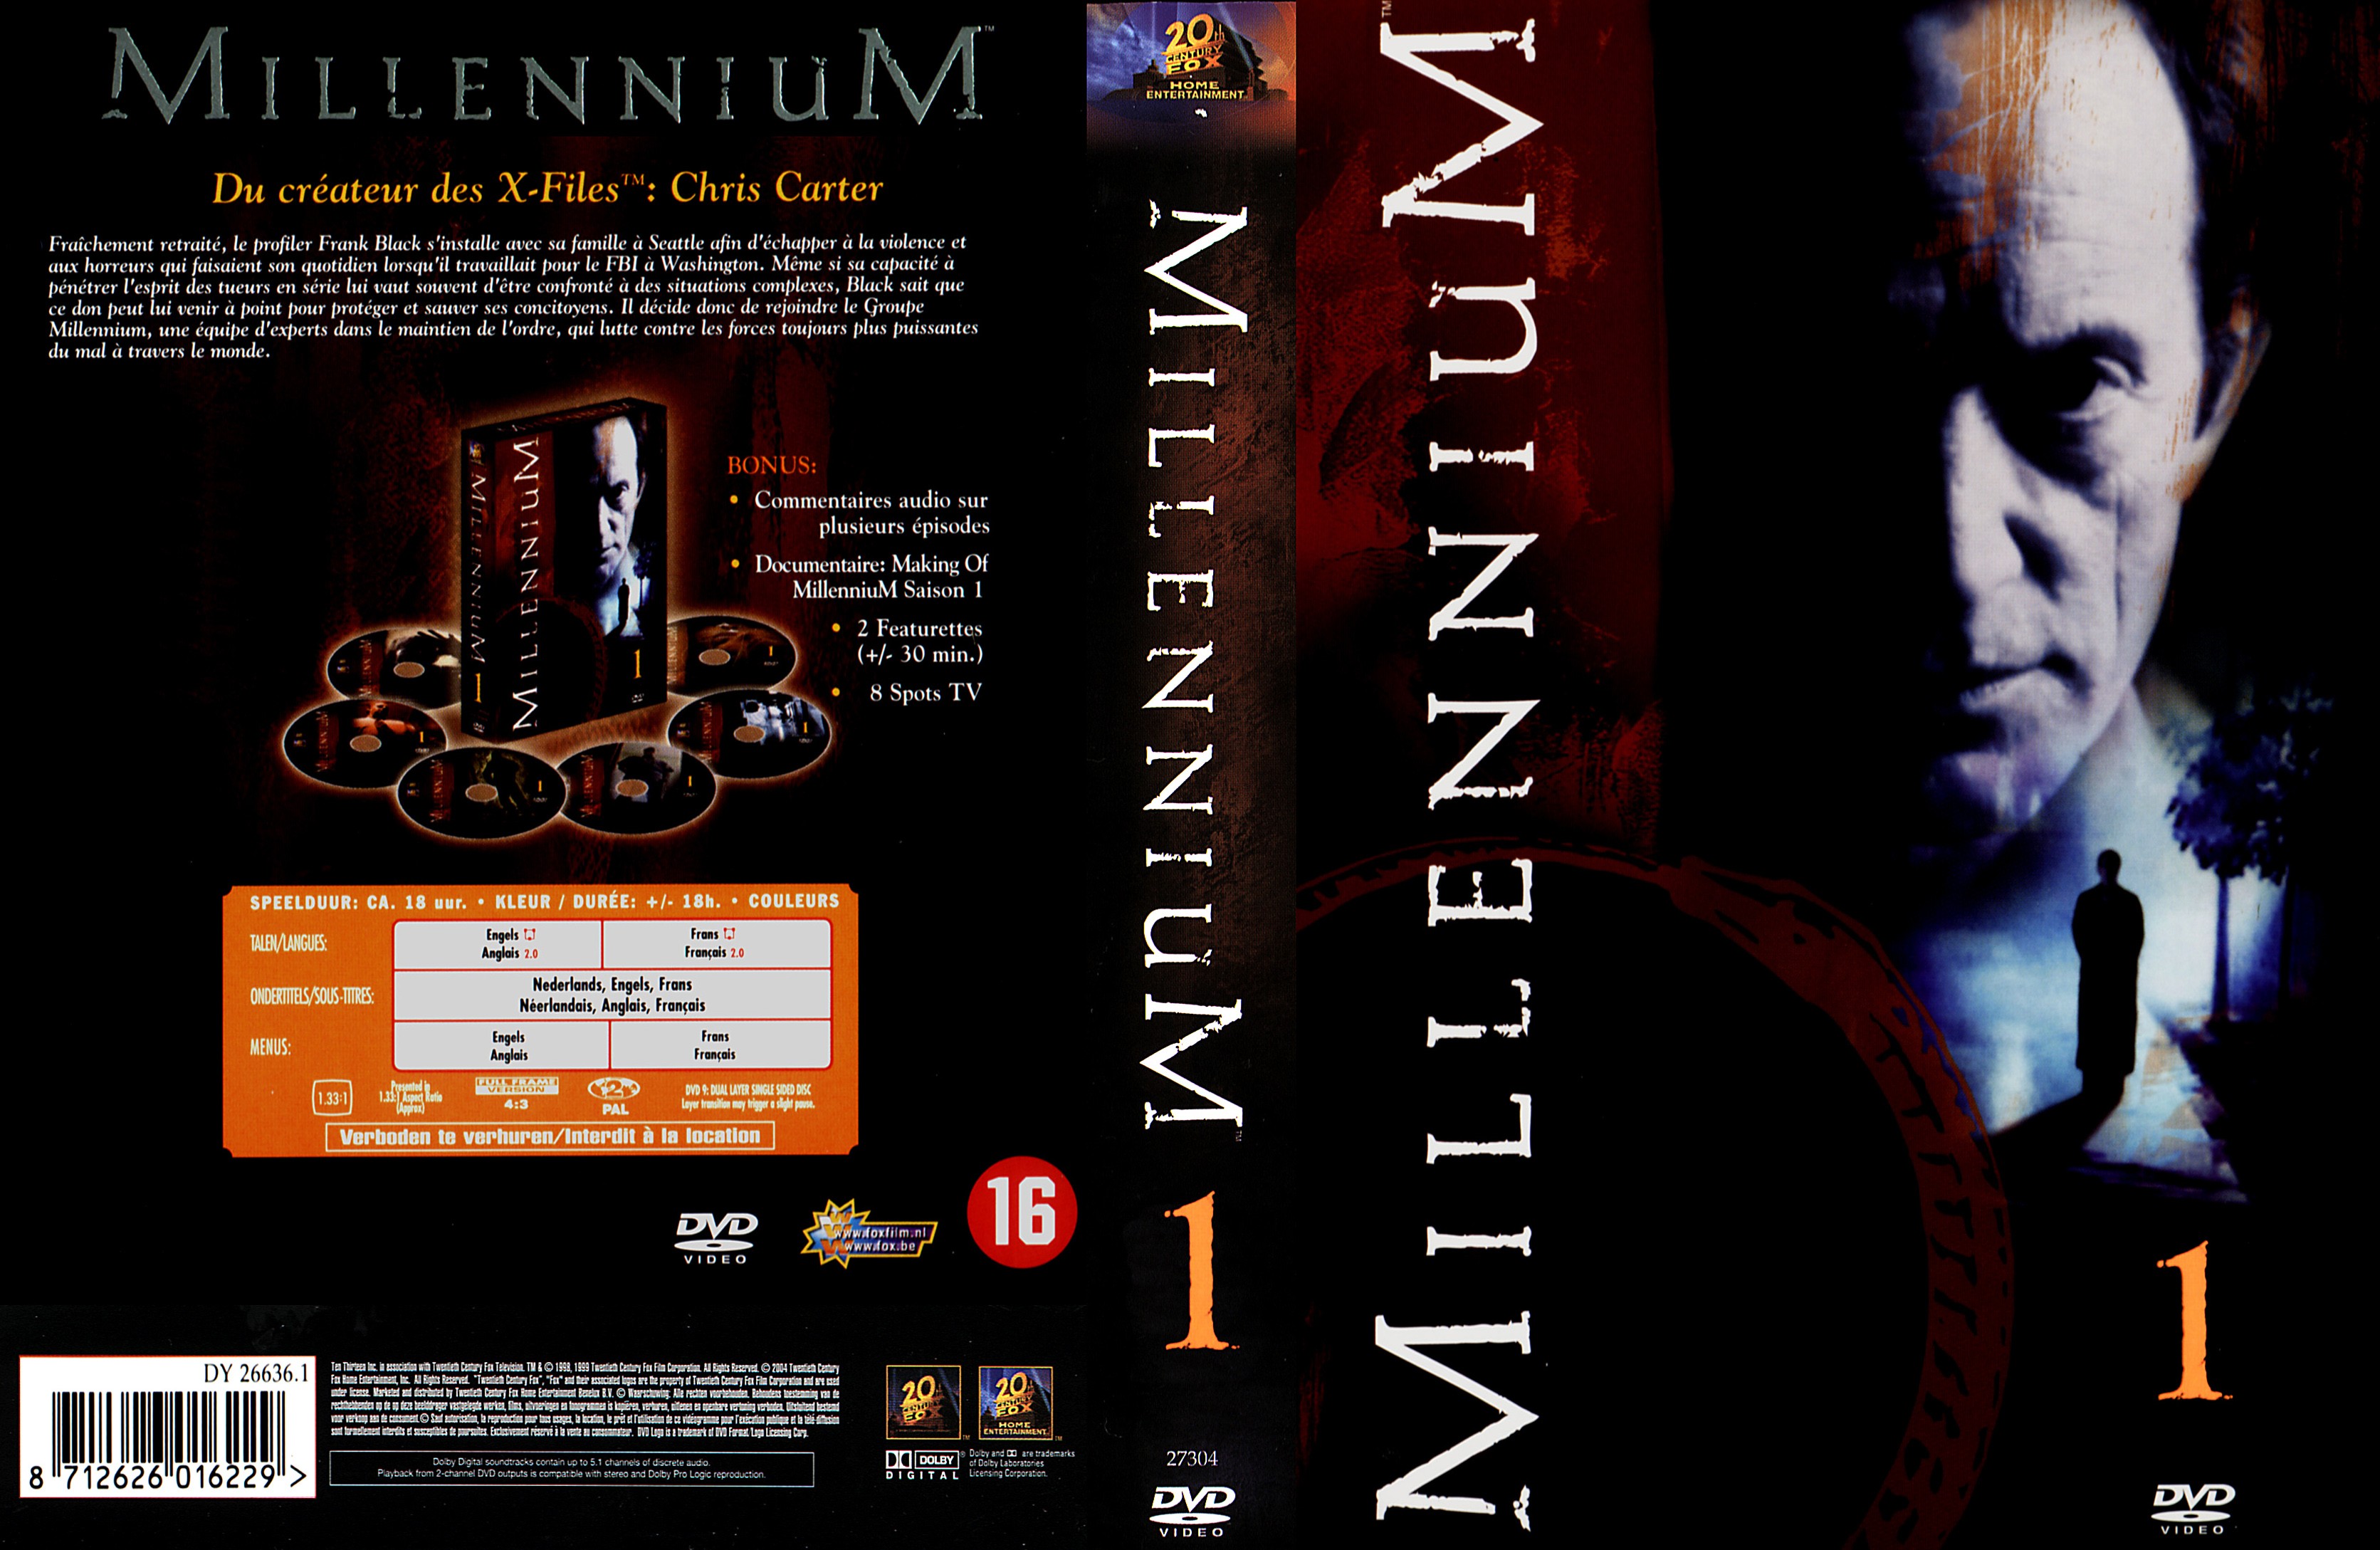 Jaquette DVD Millennium Saison 1 COFFRET v2